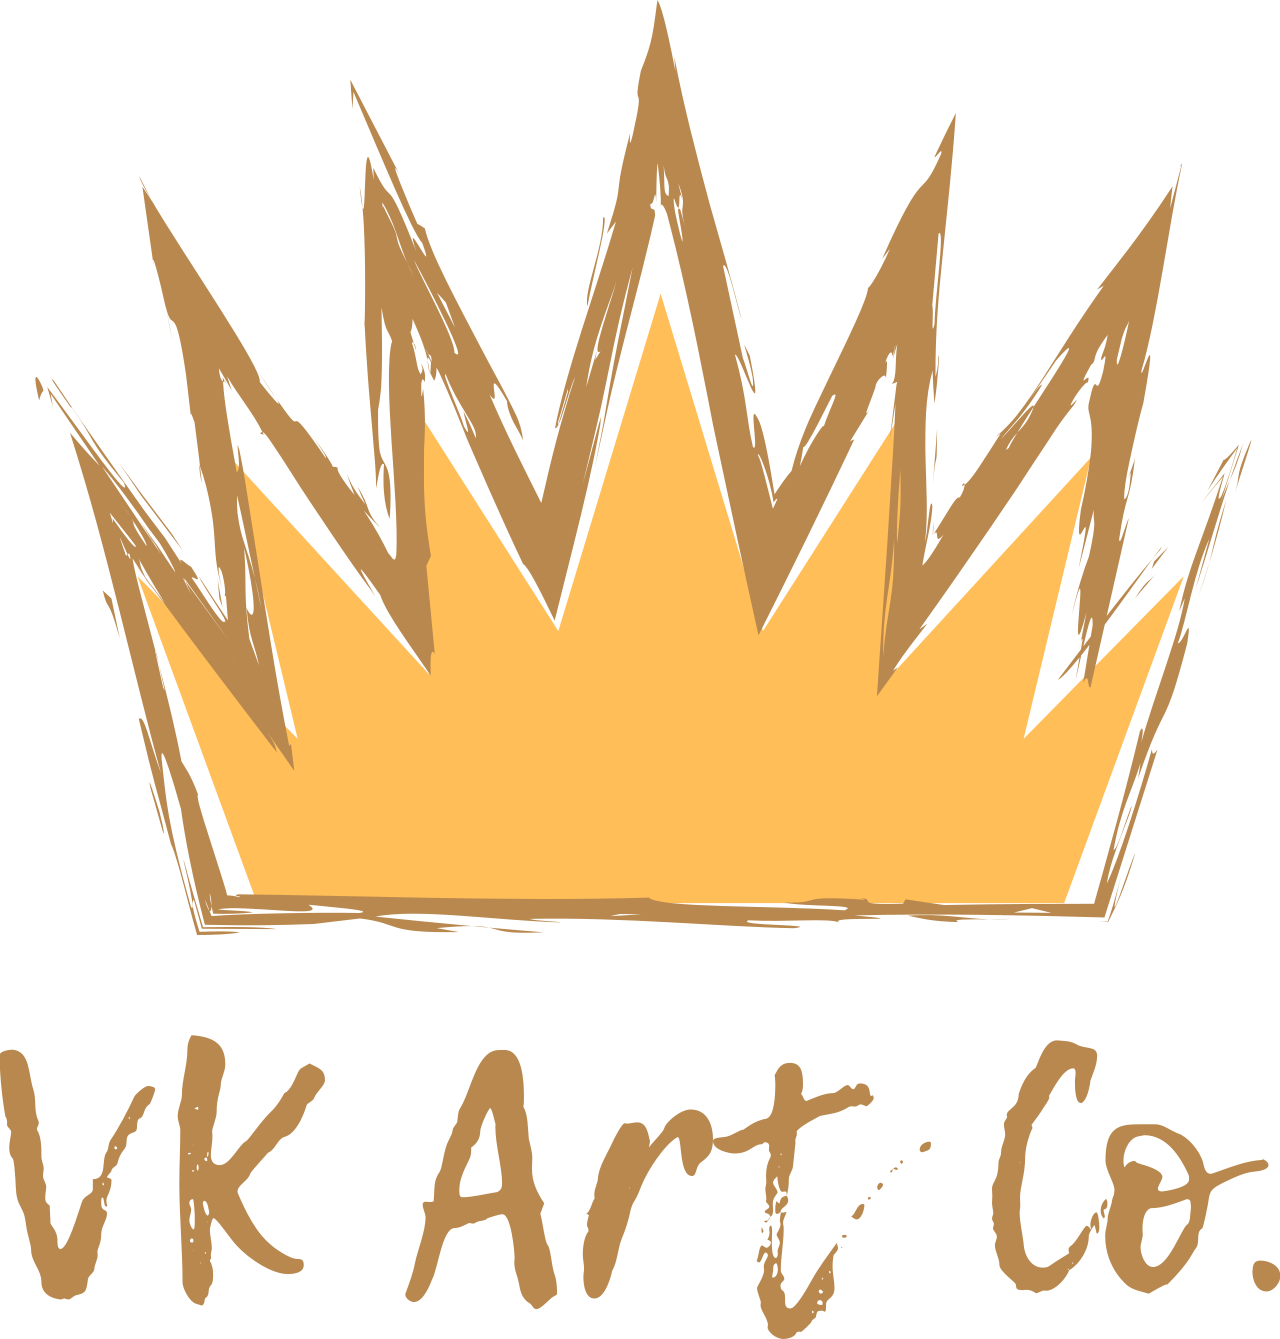 VK Art Co.'s logo